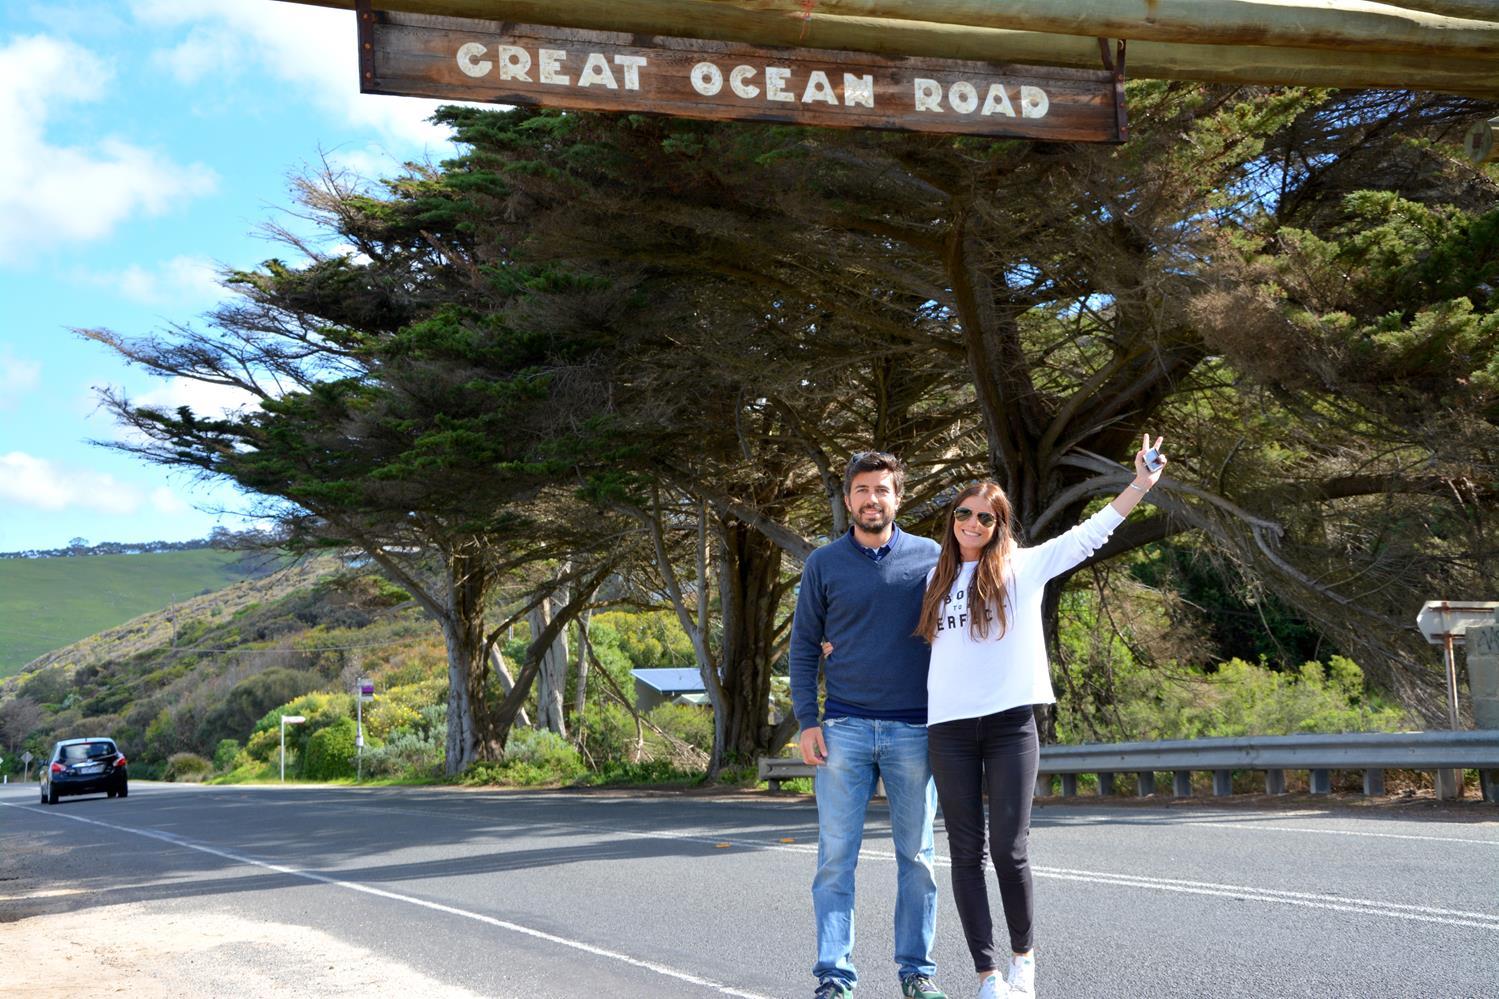 great_ocean_road_sign